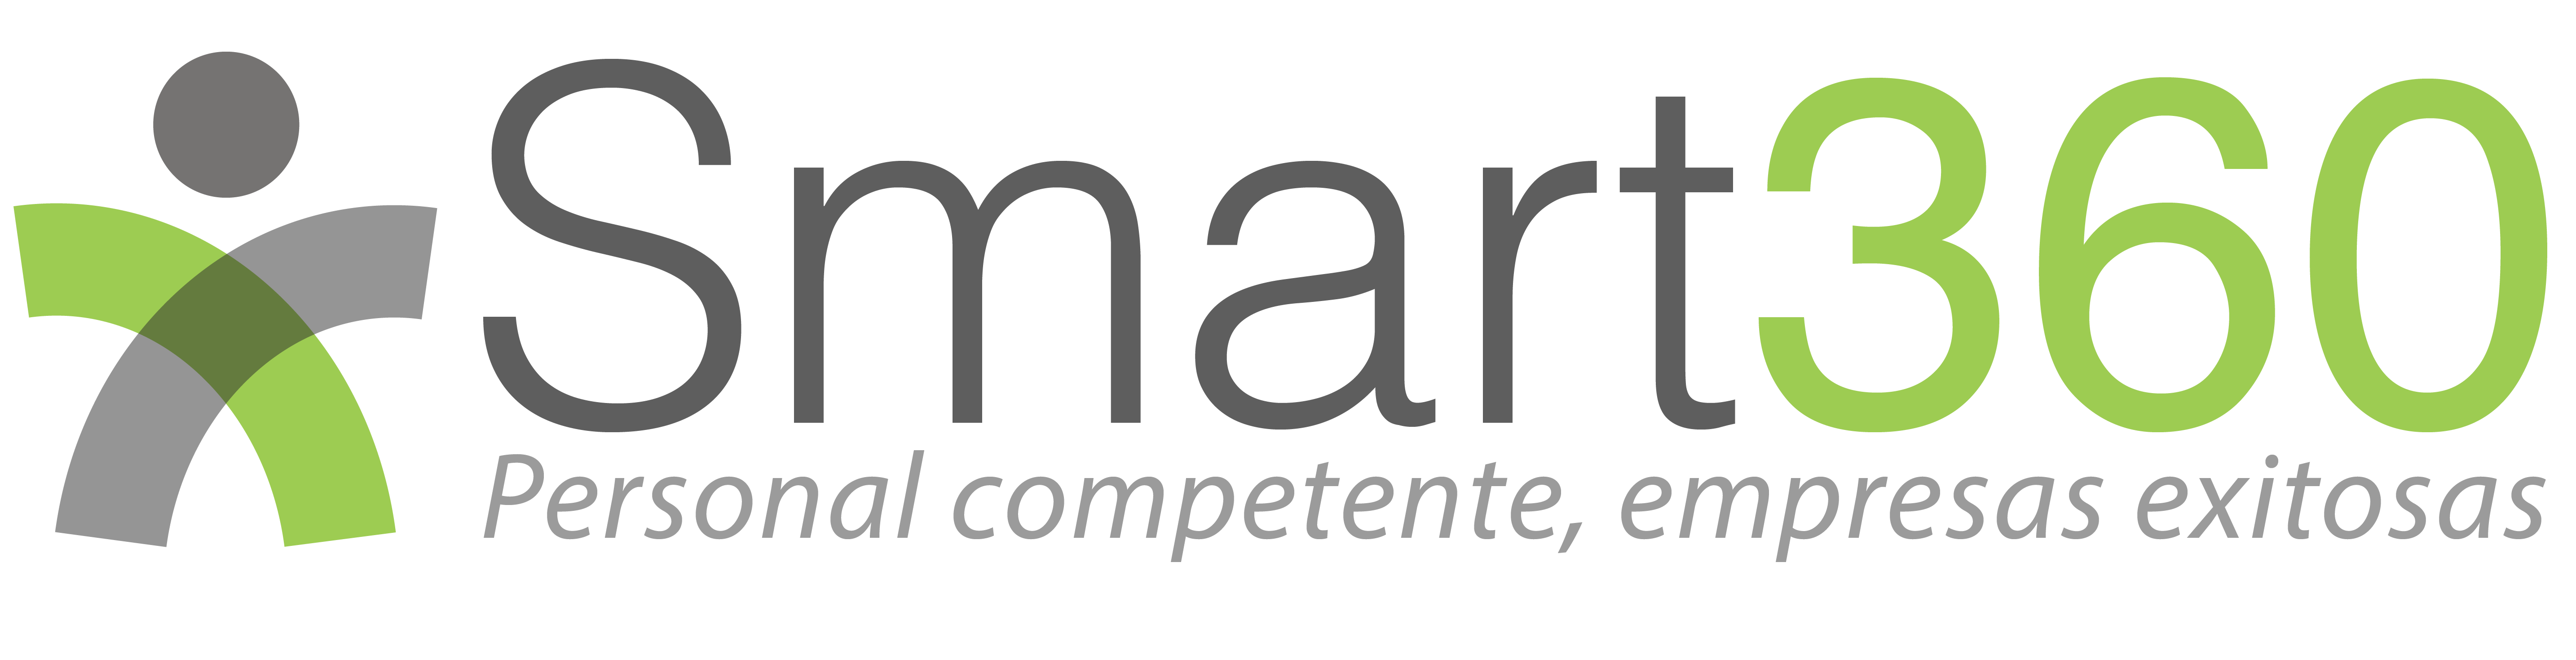 Logo de la herramienta de evaluación de desempeño 360 grados Smart 36O, nombre de la marca en color gris y verde